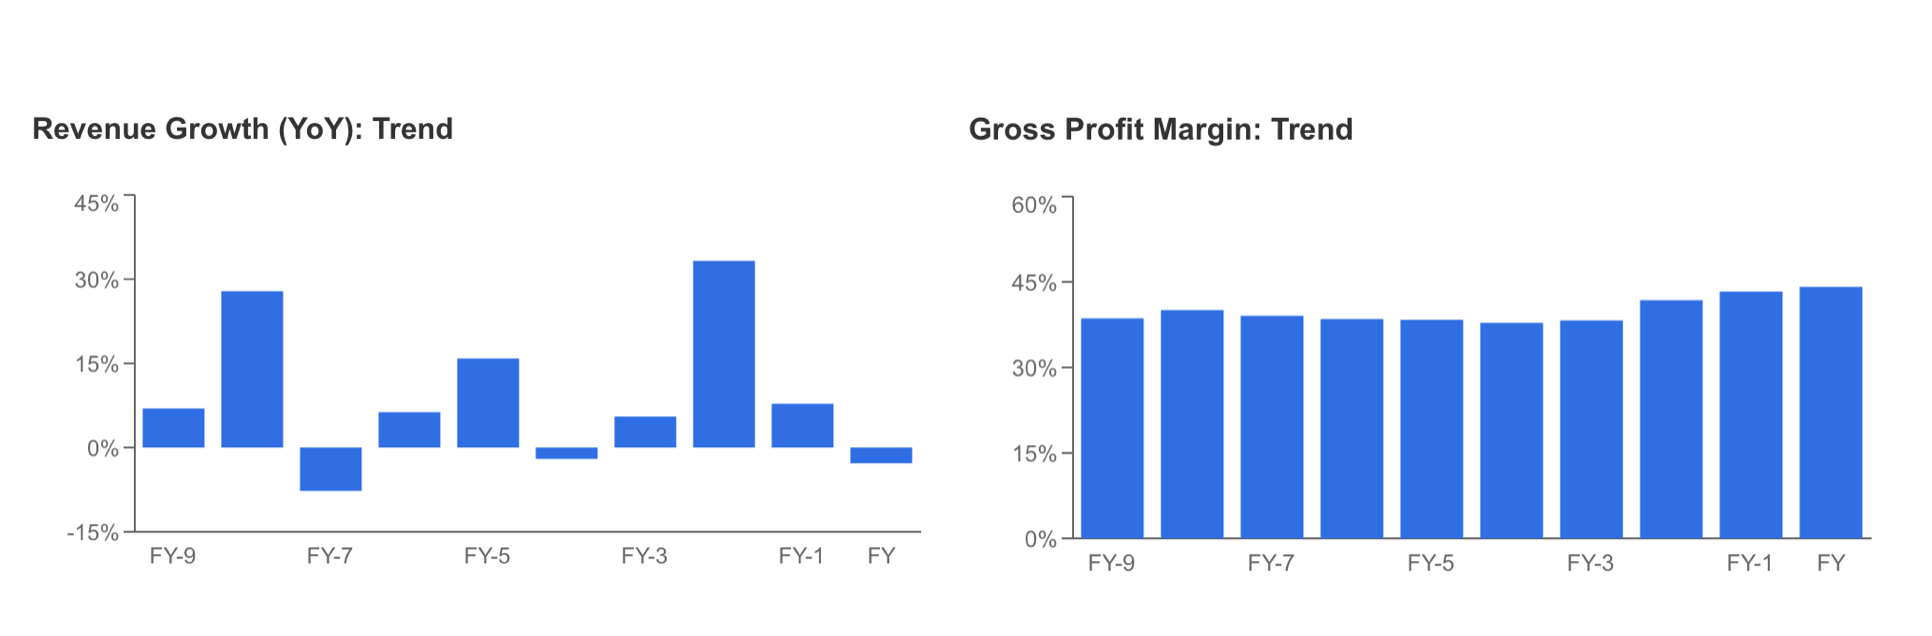 Descripción: Revenue Growth, Gross Profit Margins